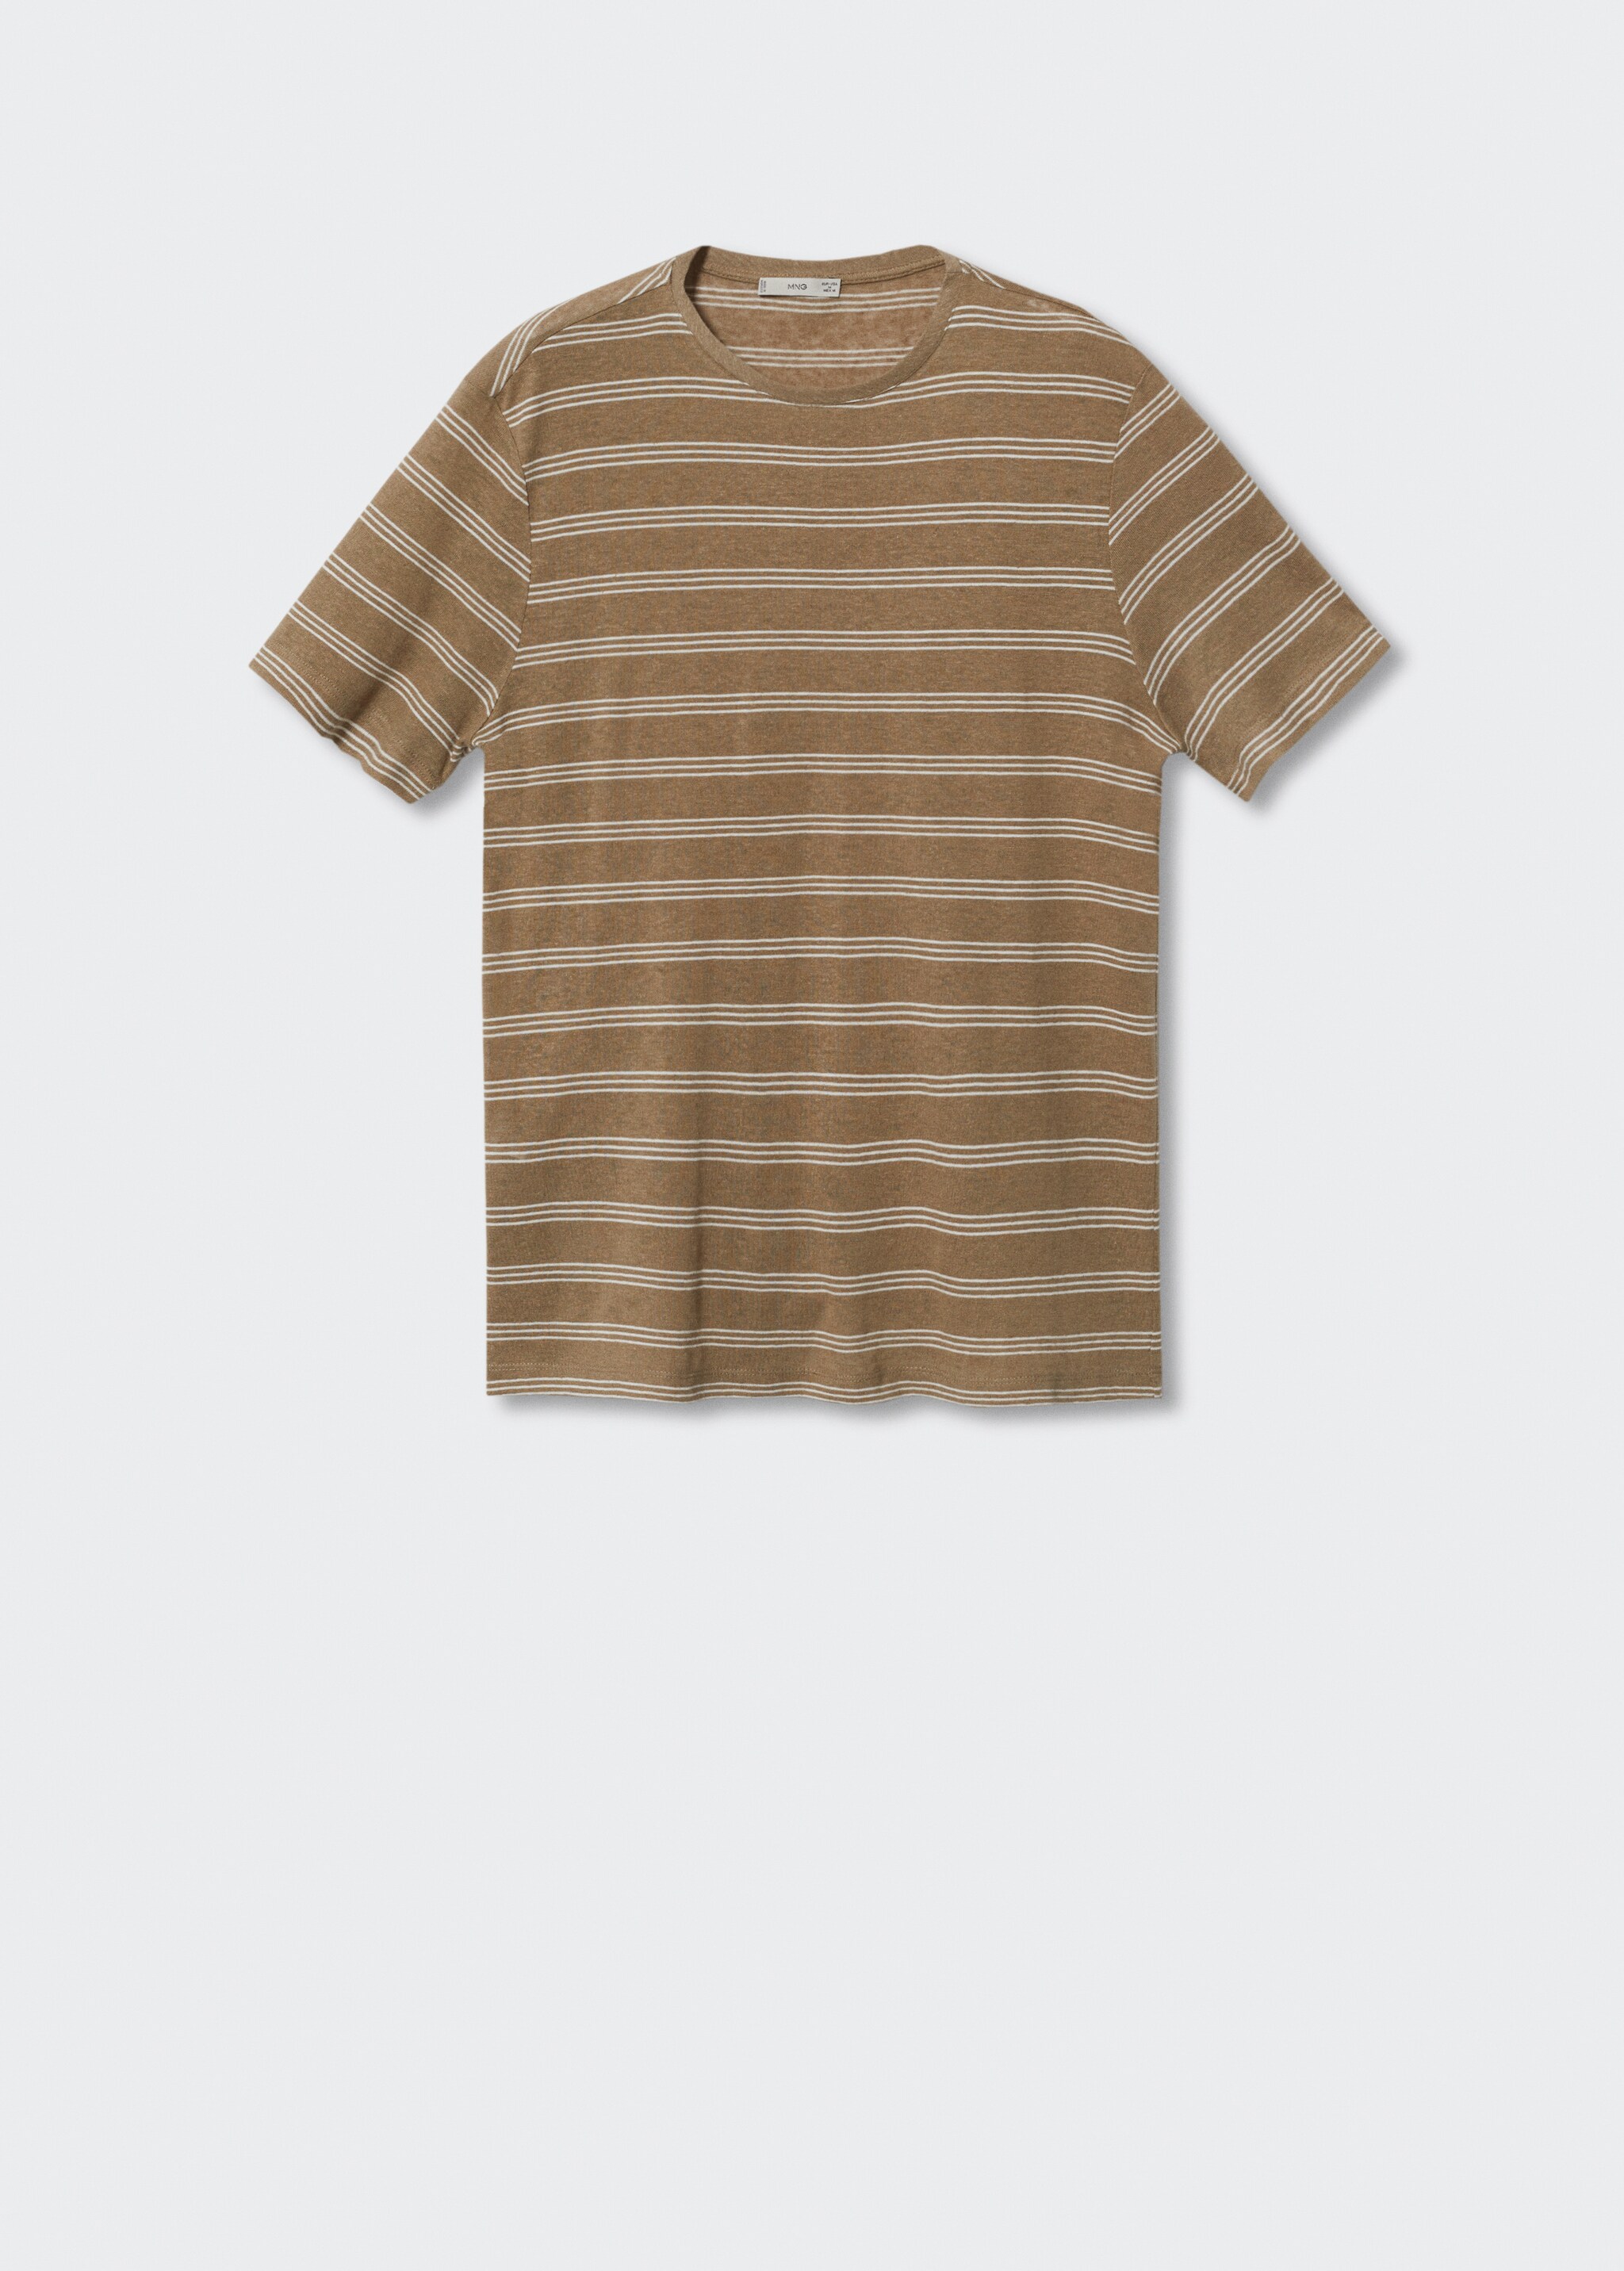 Camiseta lino rayas - Artículo sin modelo